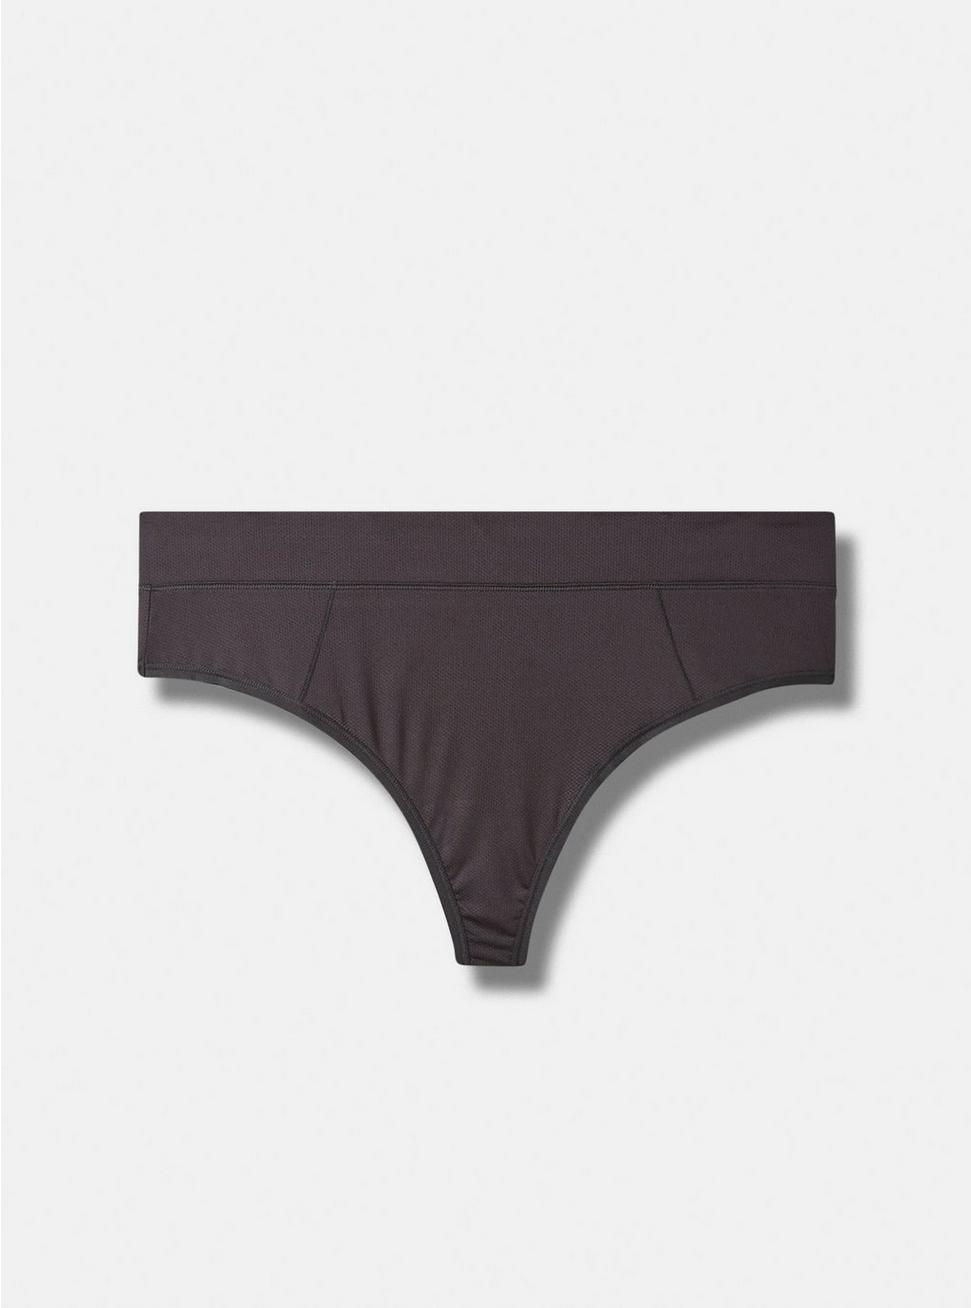 Plus Size Active Microfiber Mid-Rise Thong Panty, RICH BLACK, hi-res